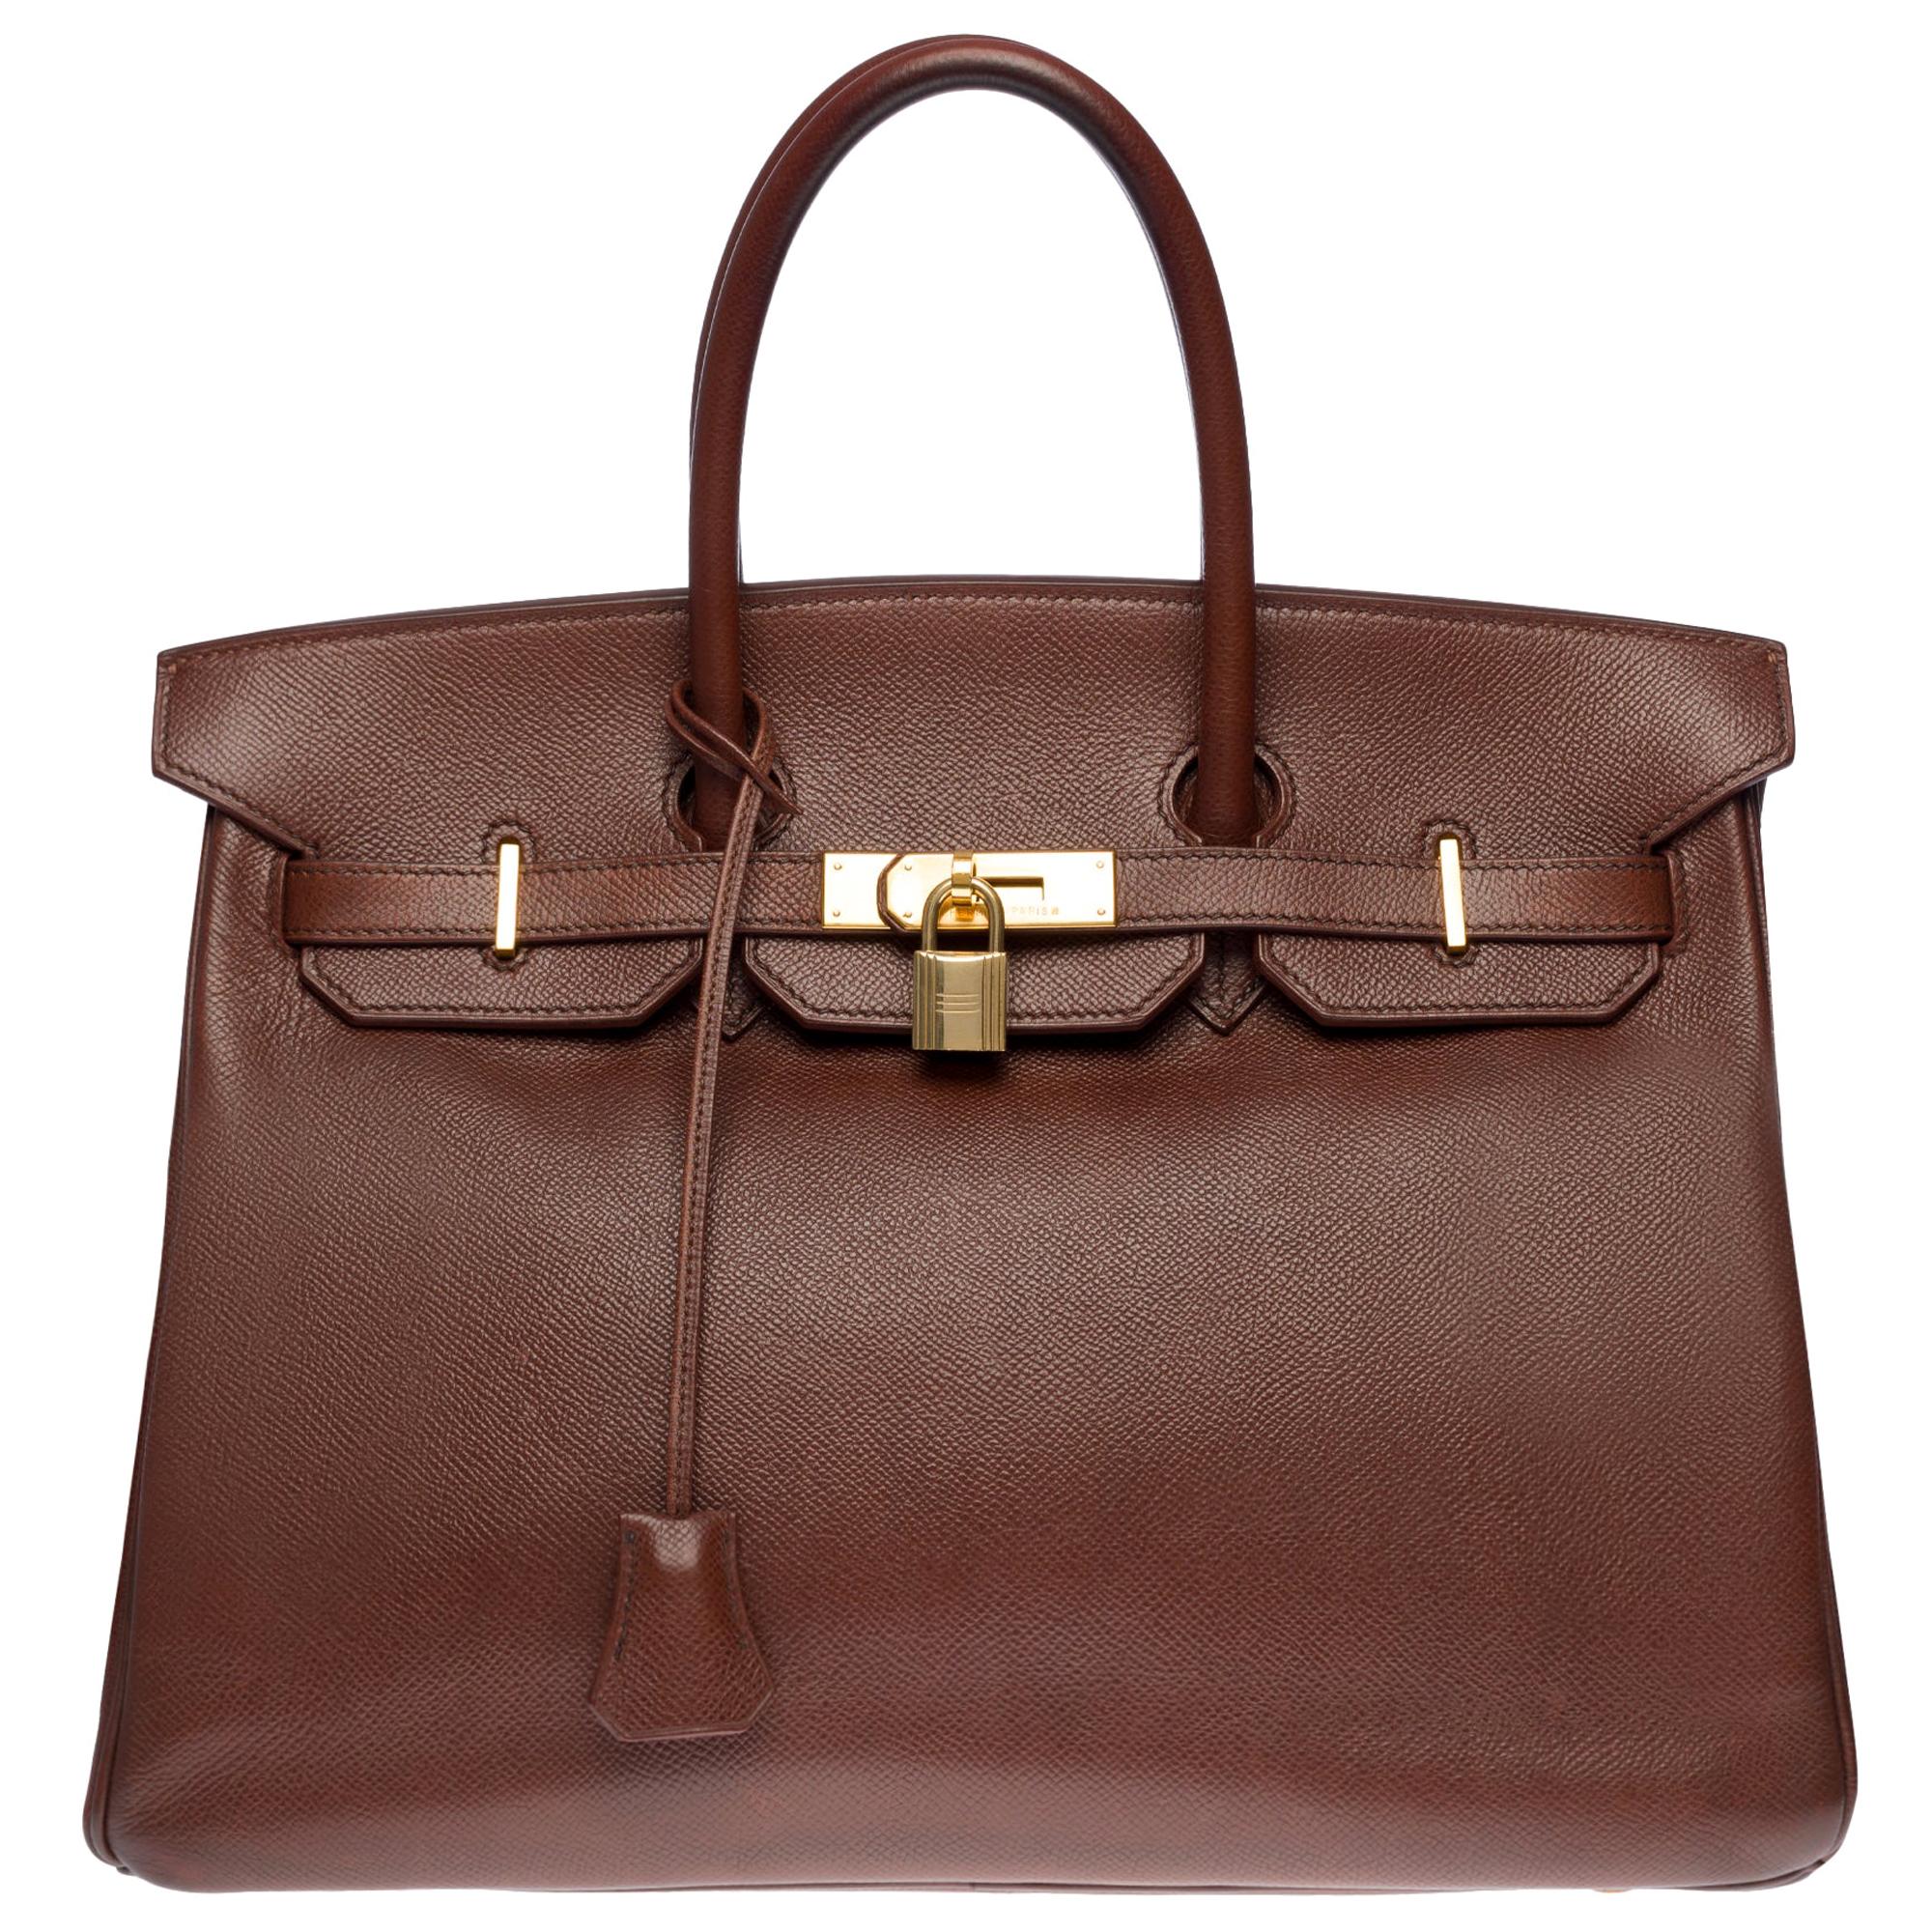 Hermès Birkin 35 handbag in brown Courchevel leather with gold hardware !